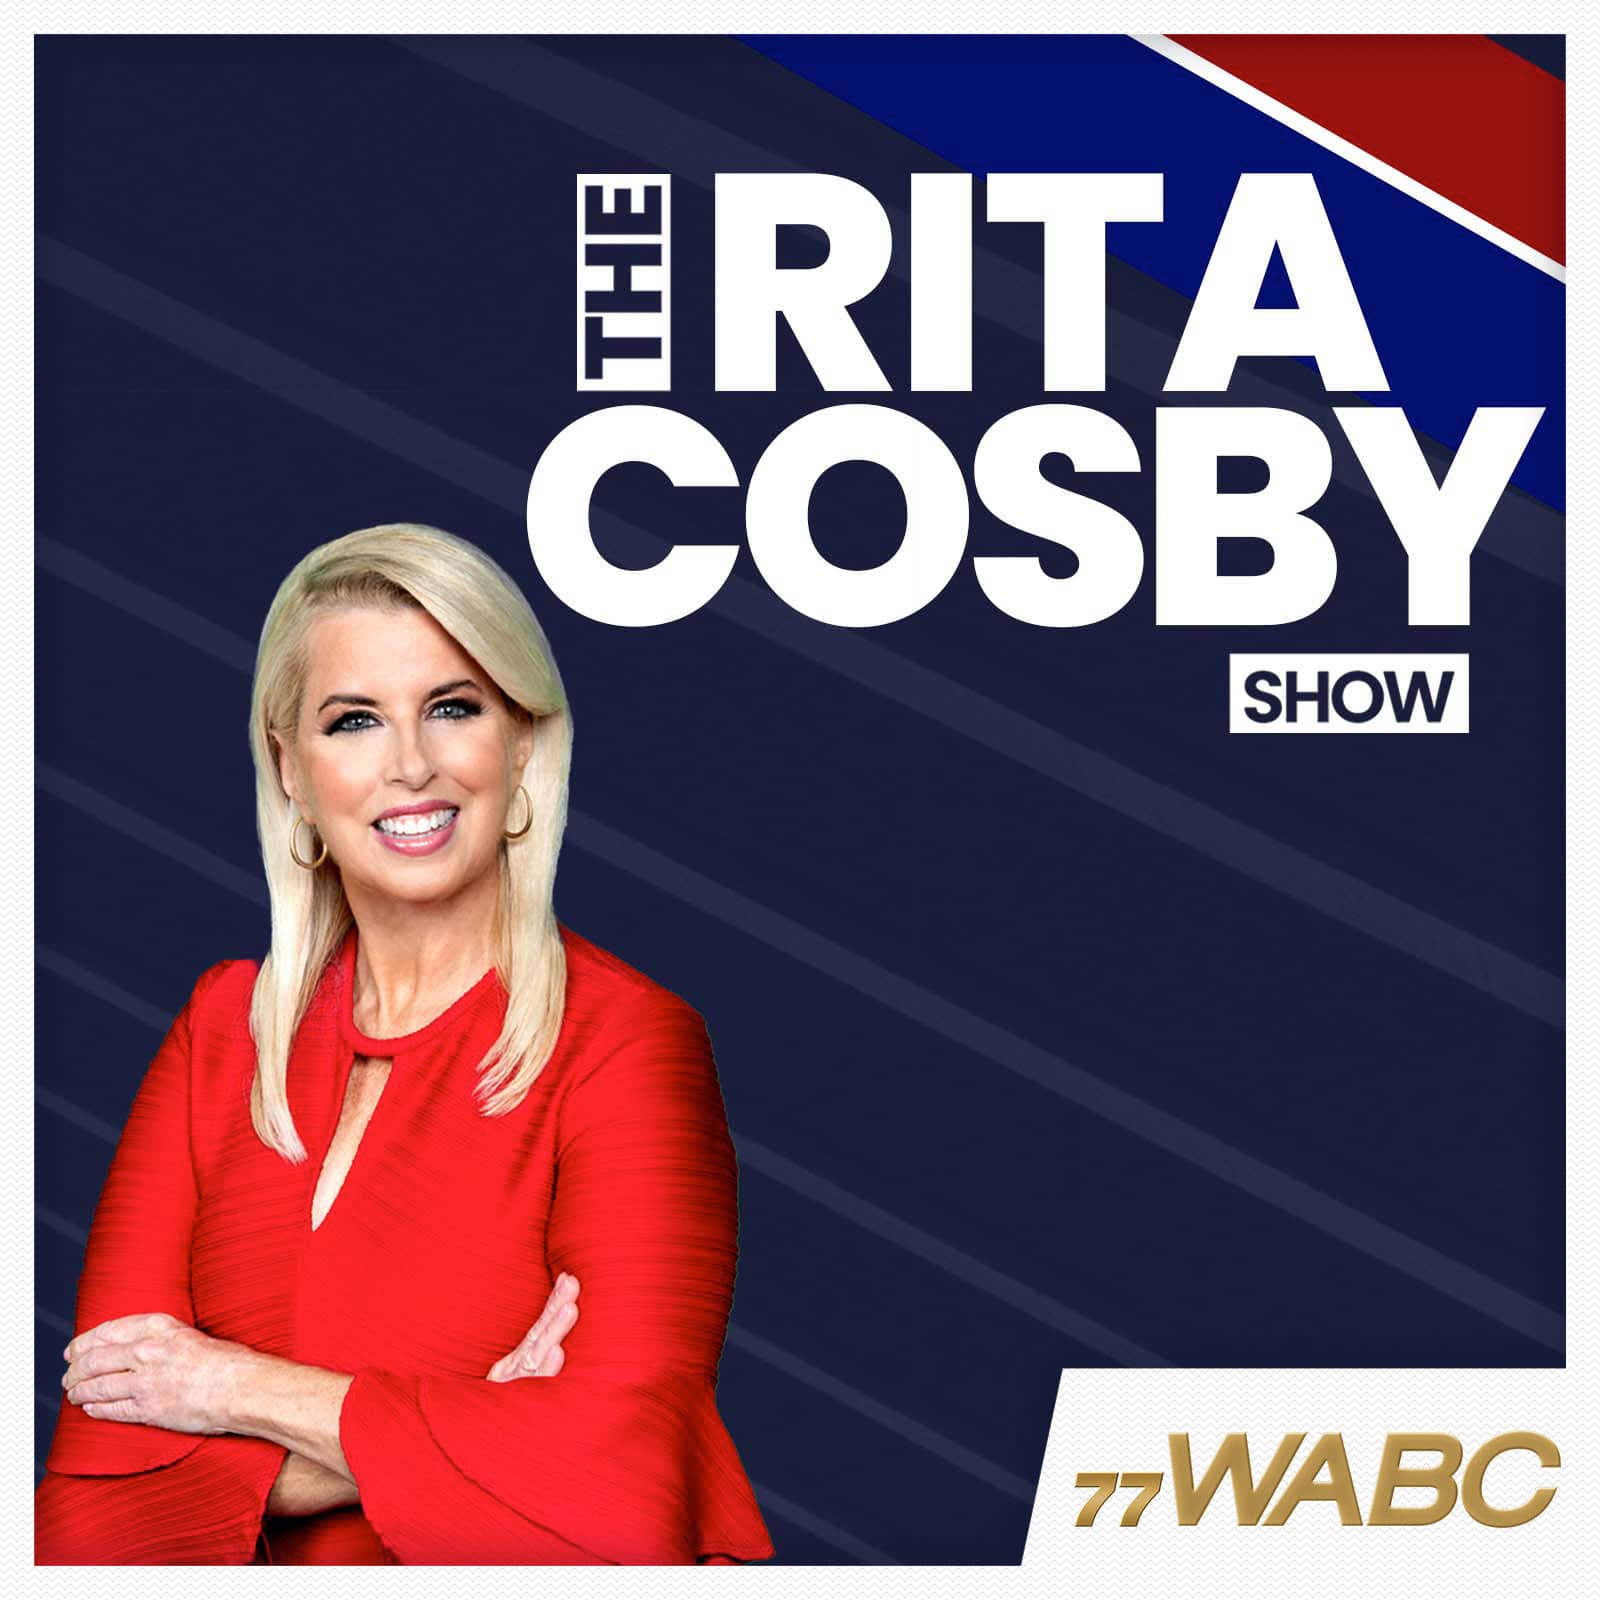 rita-cosby-podcast-new-logo-341